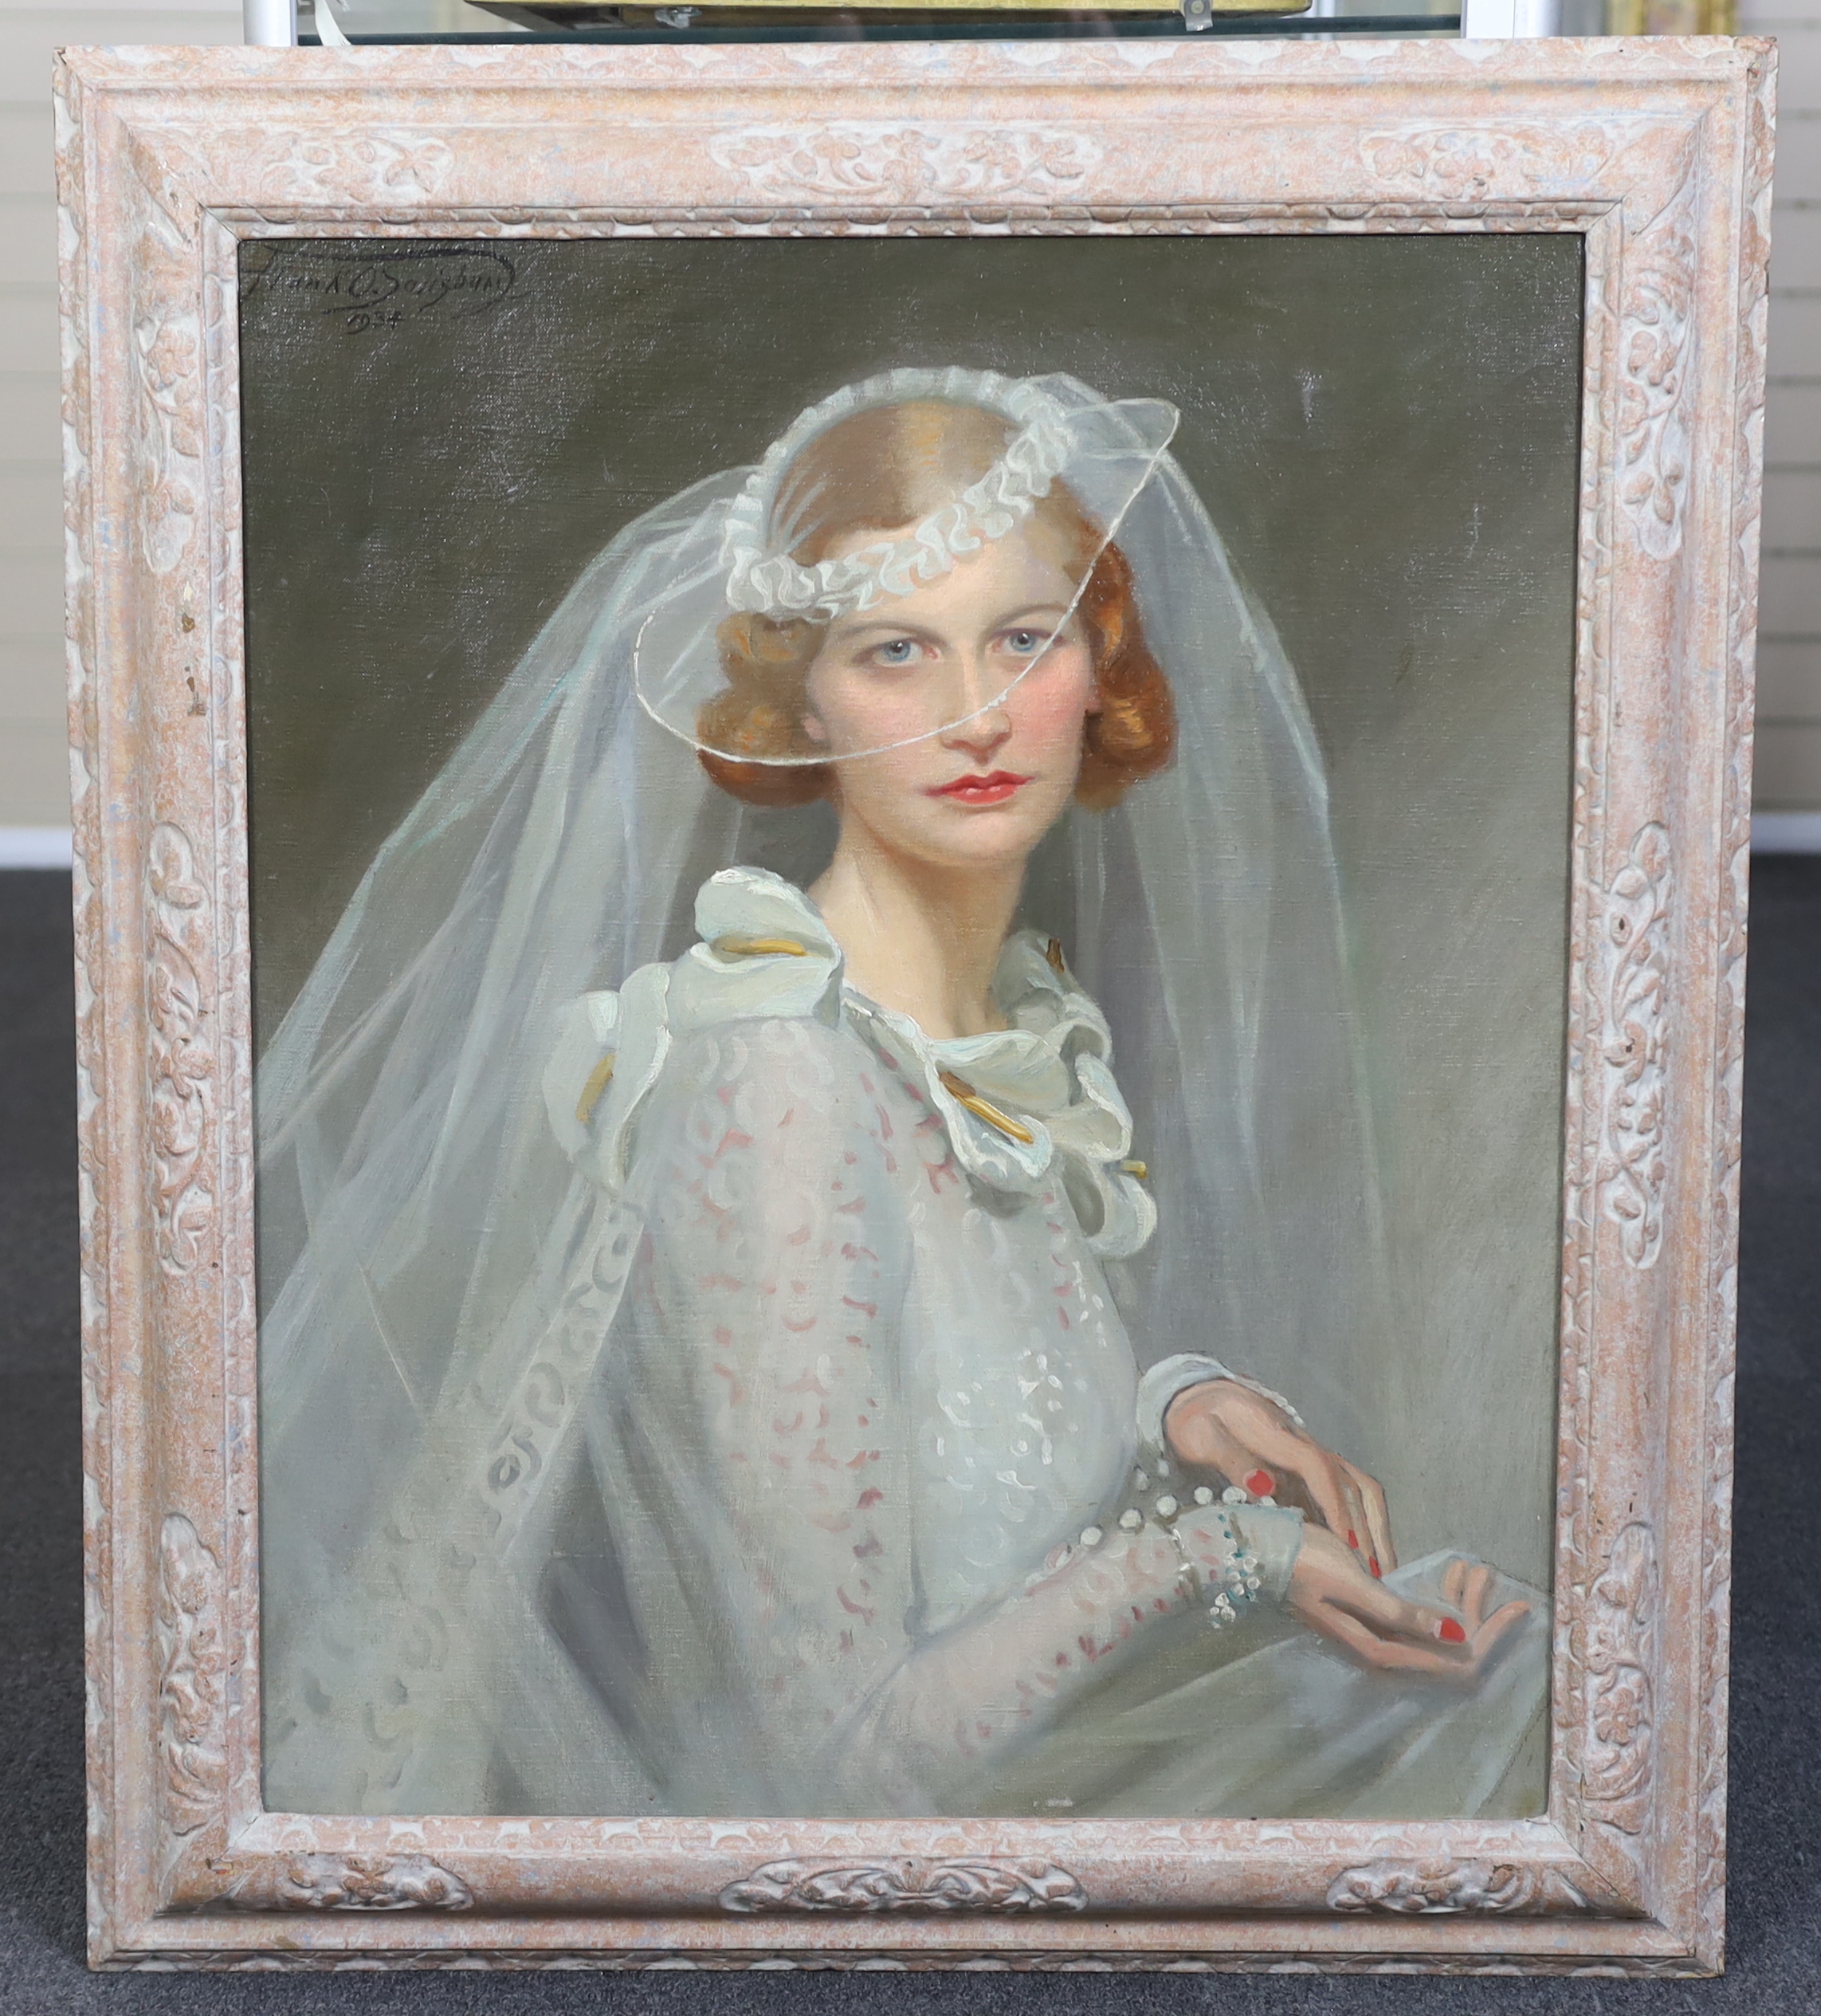 Frank O. Salisbury (English, 1874-1962), Portrait of a bride, oil on canvas, 73 x 60cm